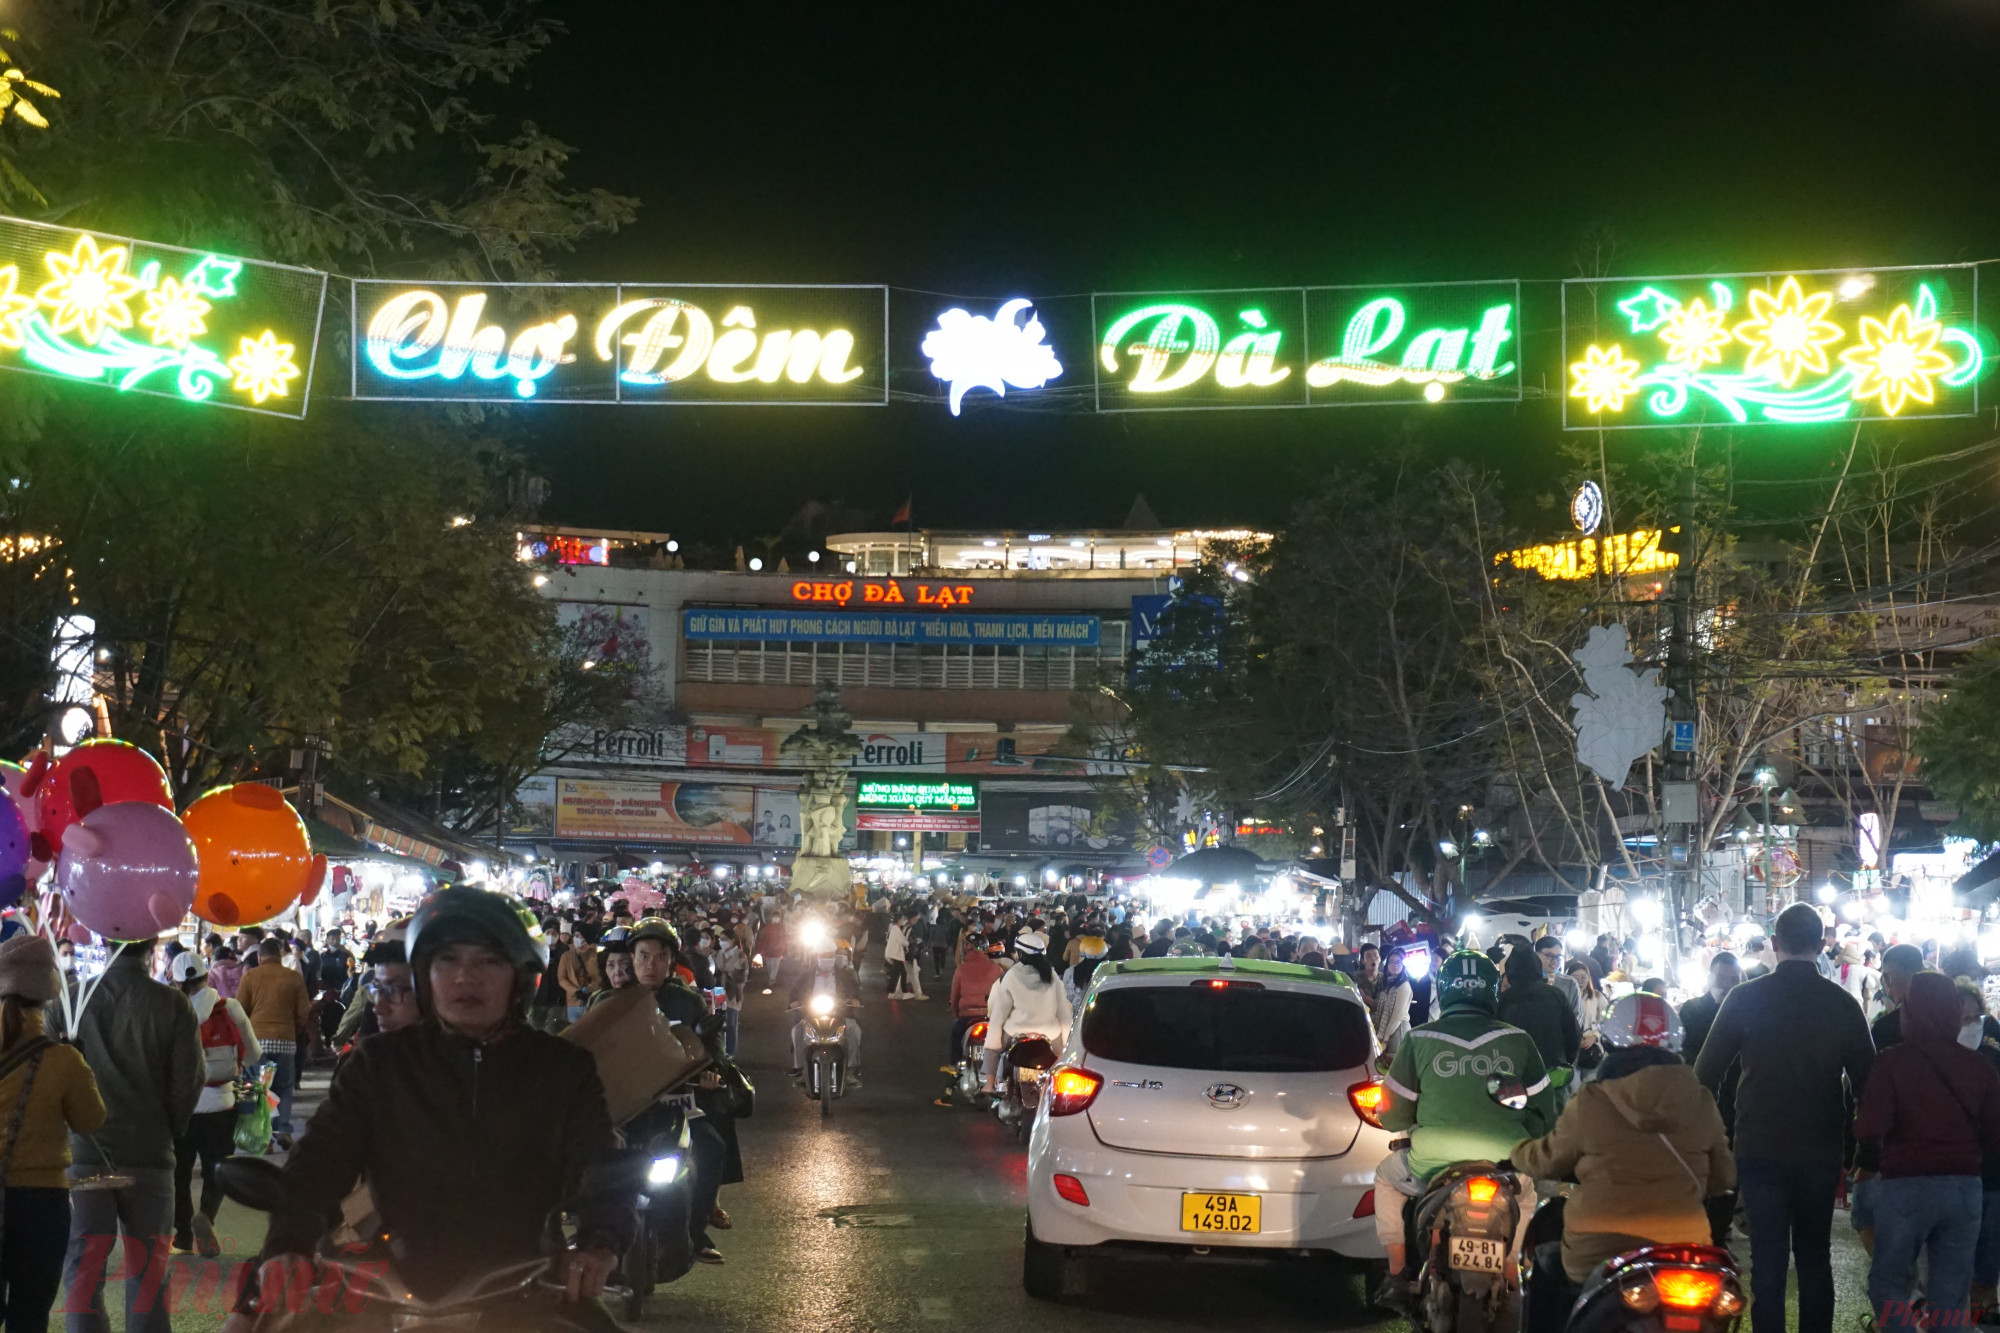 Chỉ còn vài ngày nữa là Tết Nguyên đán nhưng lượng khách đổ về Đà Lạt hiện khá đông. Và như thường lệ chợ đêm nằm ngay trung tâm thành phố vẫn là điểm đến yêu thích của các du khách.